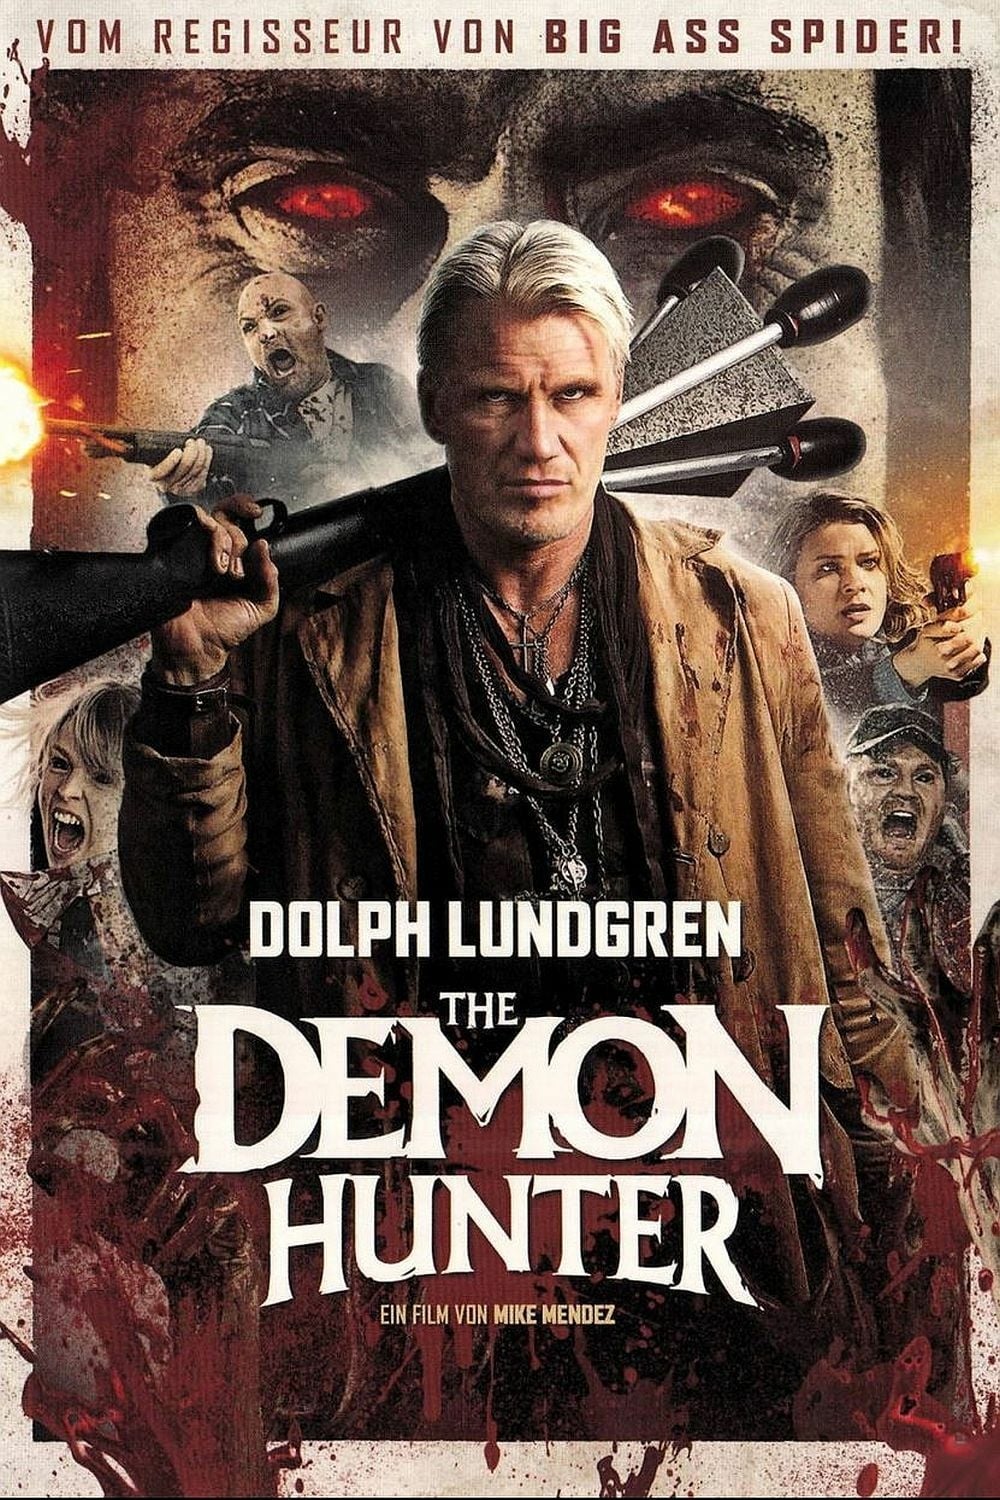 Plakat von "The Demon Hunter"